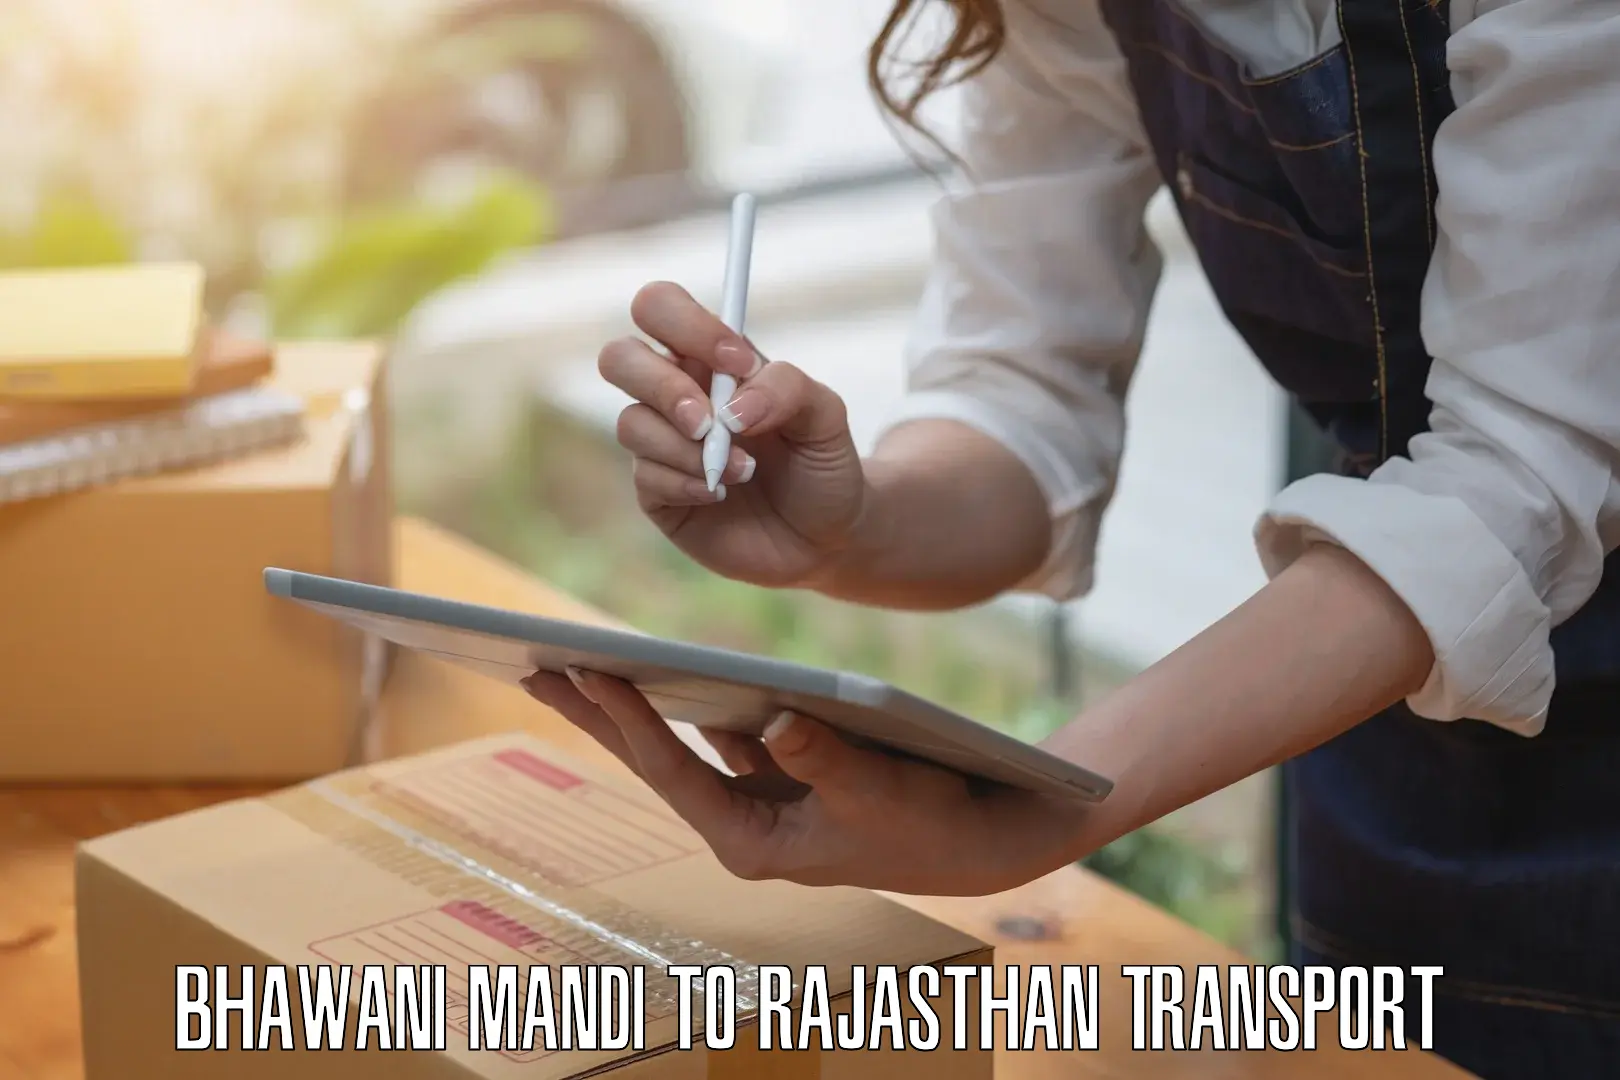 Transport in sharing in Bhawani Mandi to Dhorimana